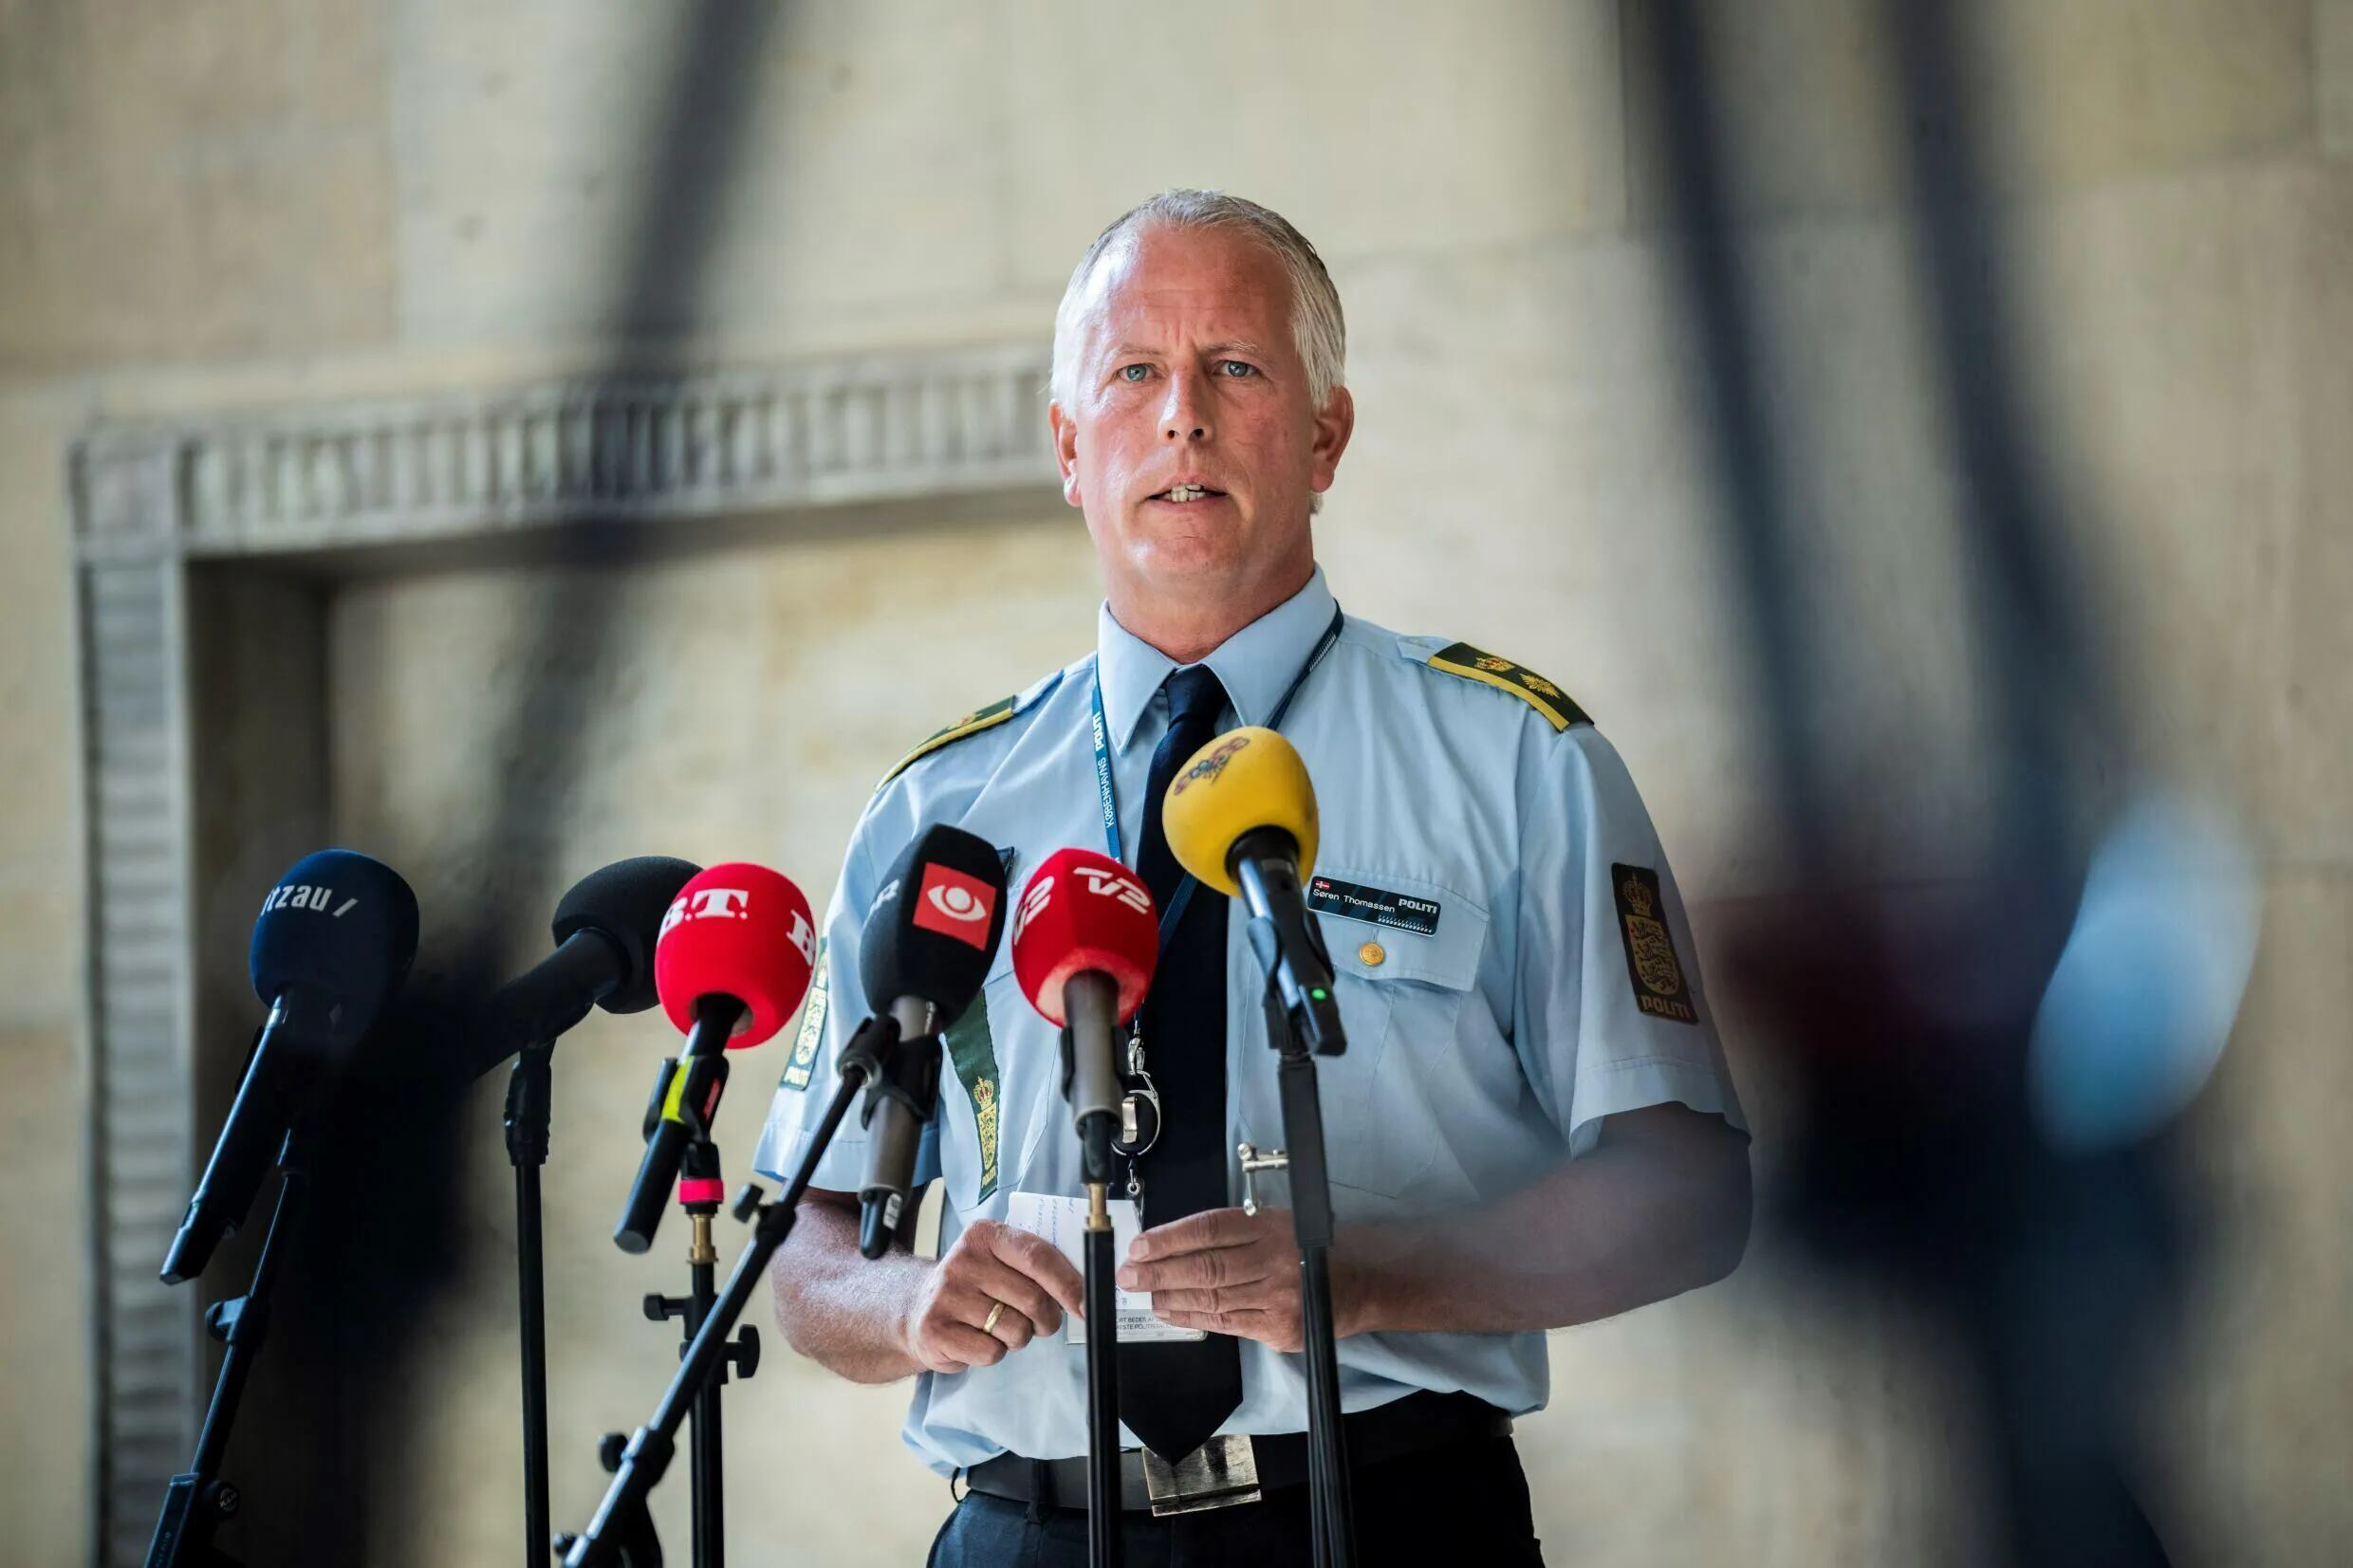 El jefe policial Soeren Thomassen da una rueda de prensa sobre la matanza en el centro comercial, el 4 de julio de 2022 en Copenhague